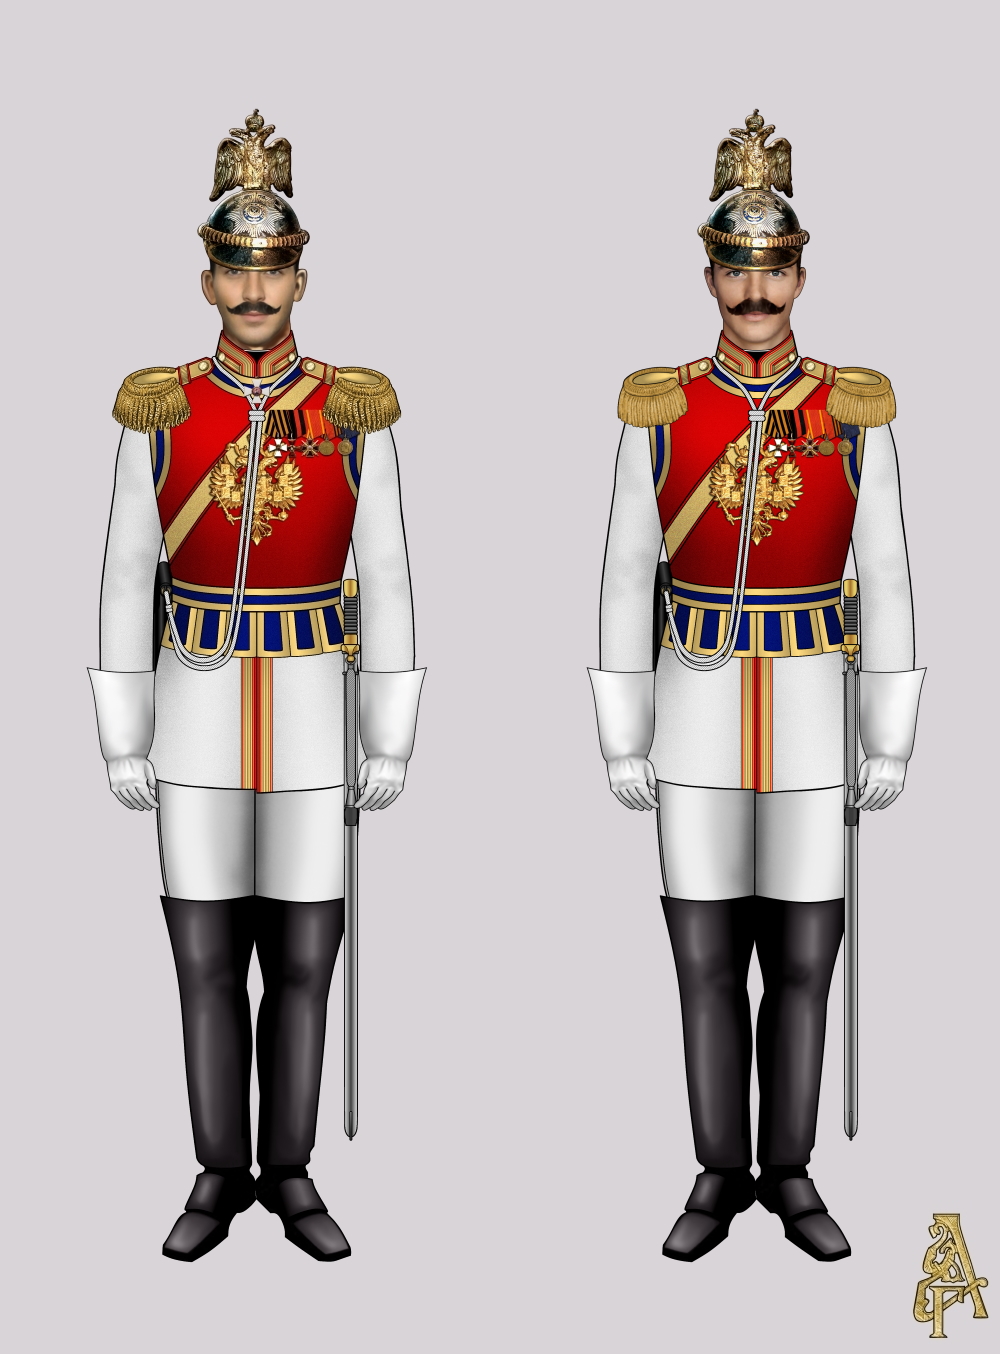 Придворная форма Лейб-гвардии Конного полка (Рис. 1, 2)